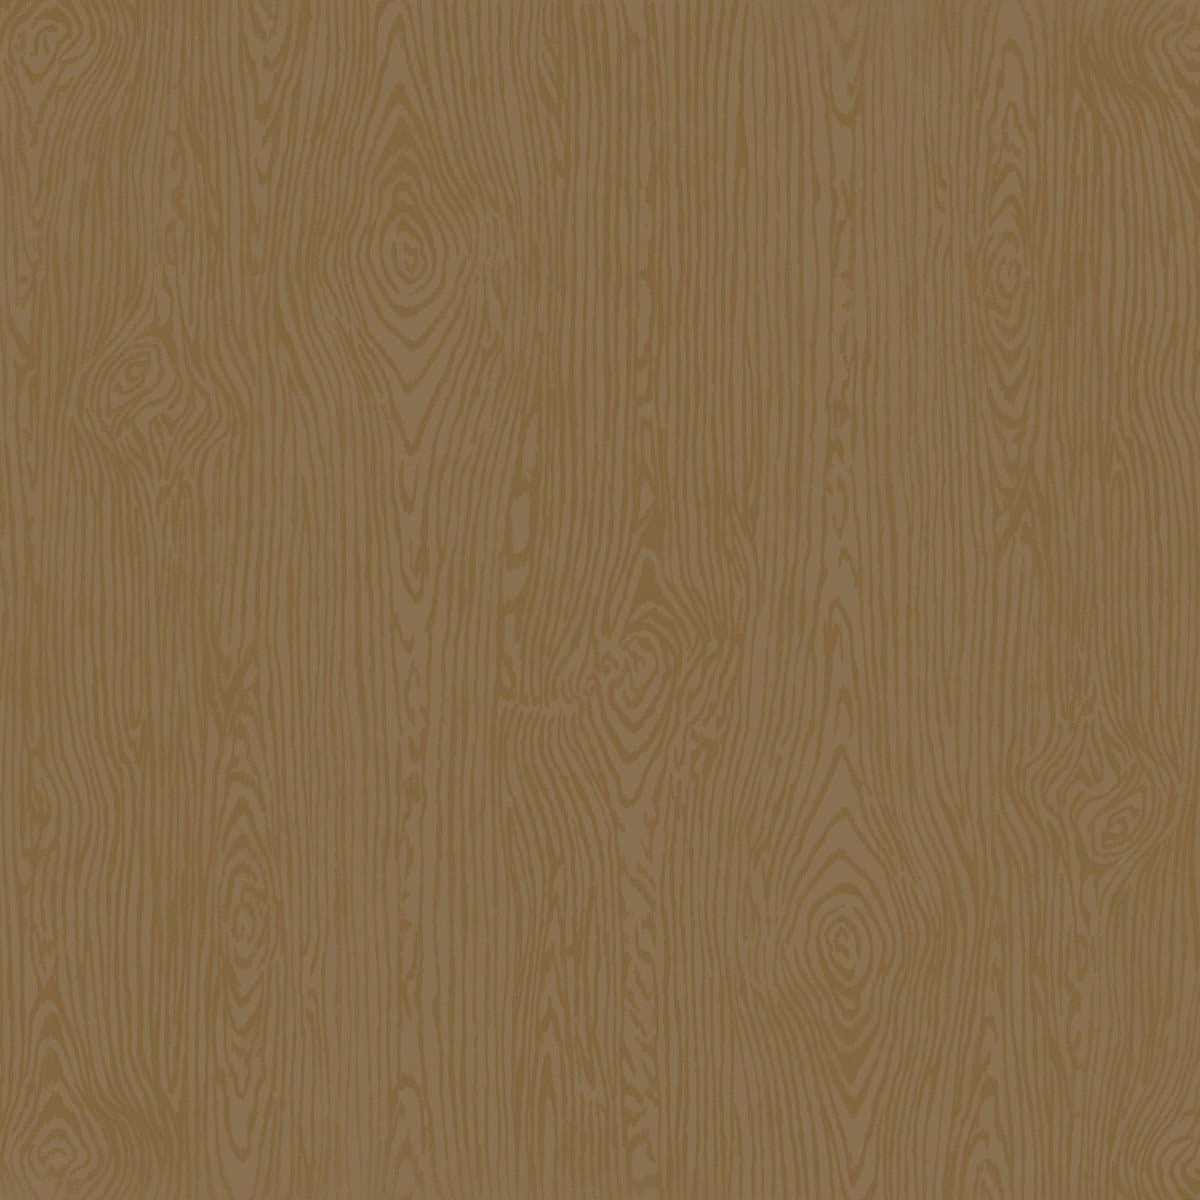 DARK KRAFT wood grain 12x12 cardstock - embossed - by American Crafts